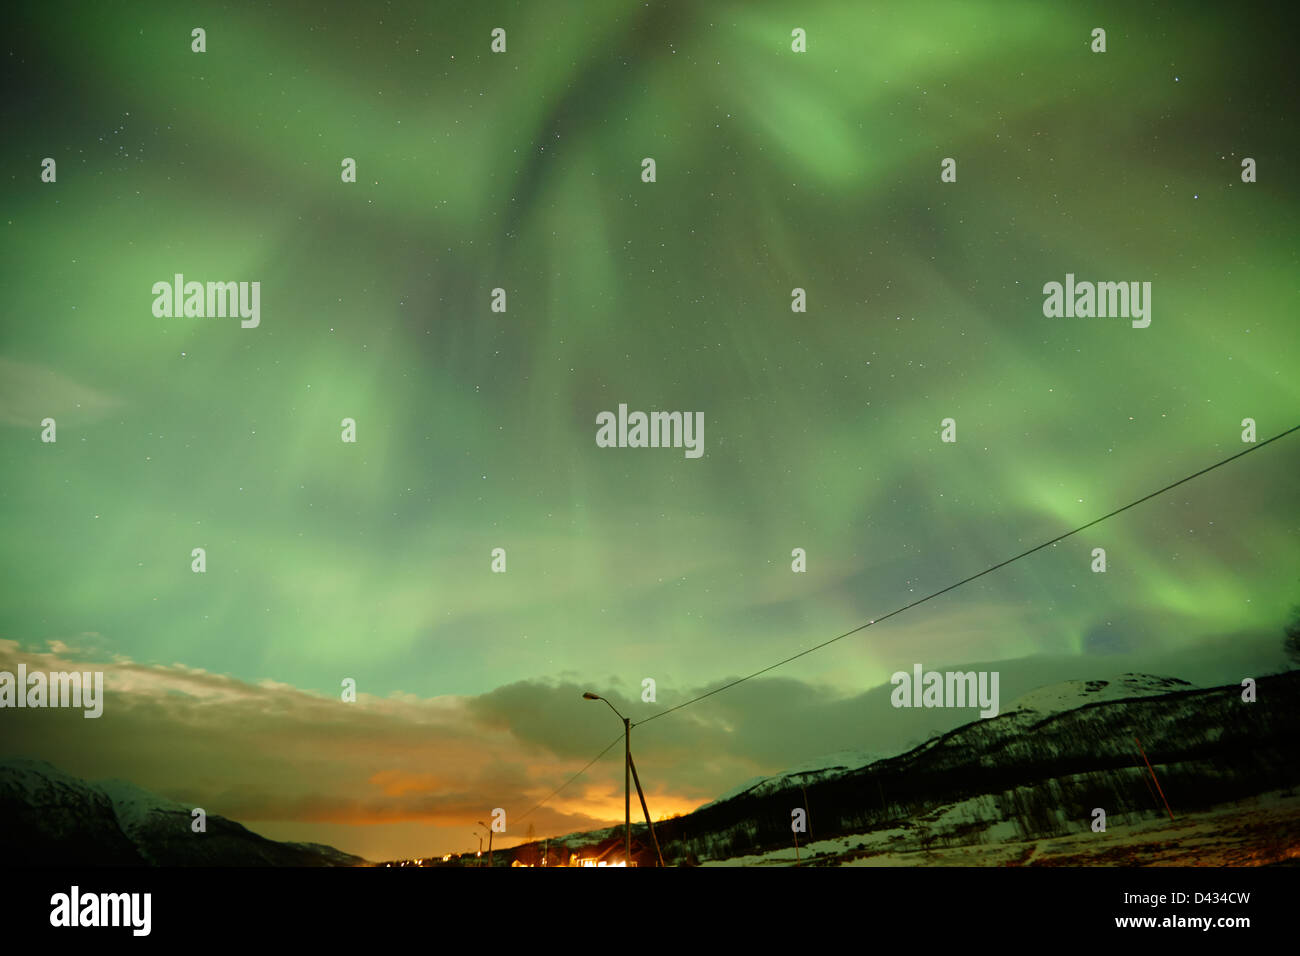 Vista di una piena corona Northern lights aurora boreale nei pressi di Tromso in Norvegia del nord europa Foto Stock